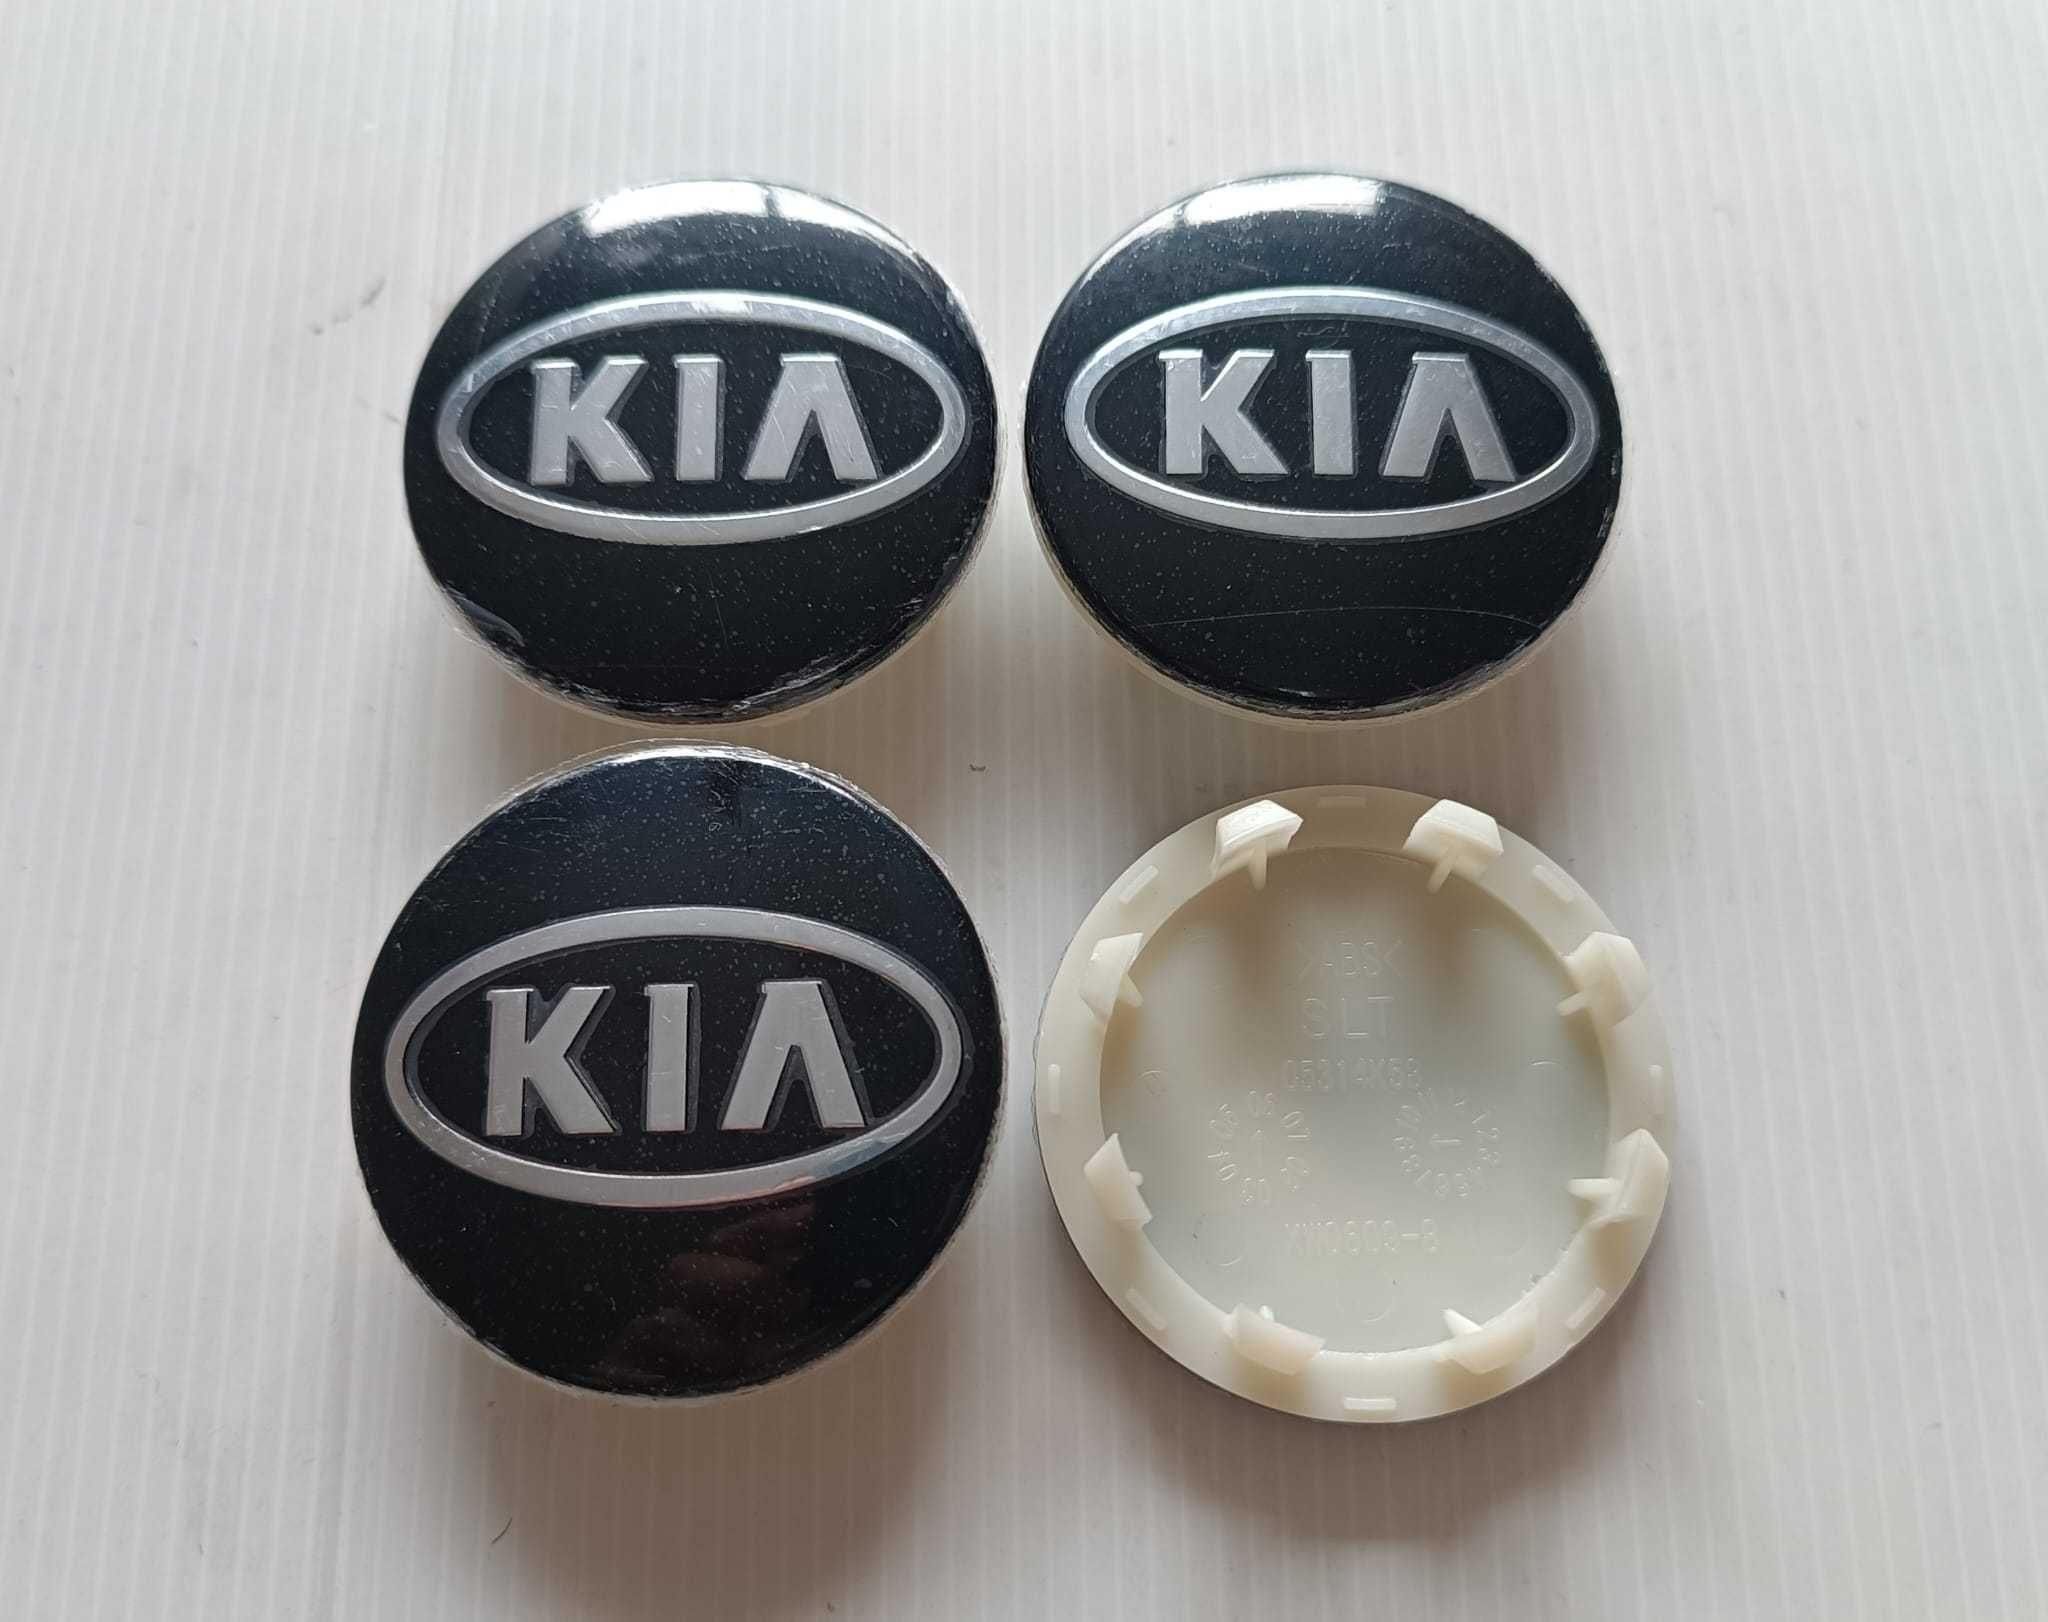 Centros/tampas de jante completos KIA com 56, 58, 60, 65 e 68 mm